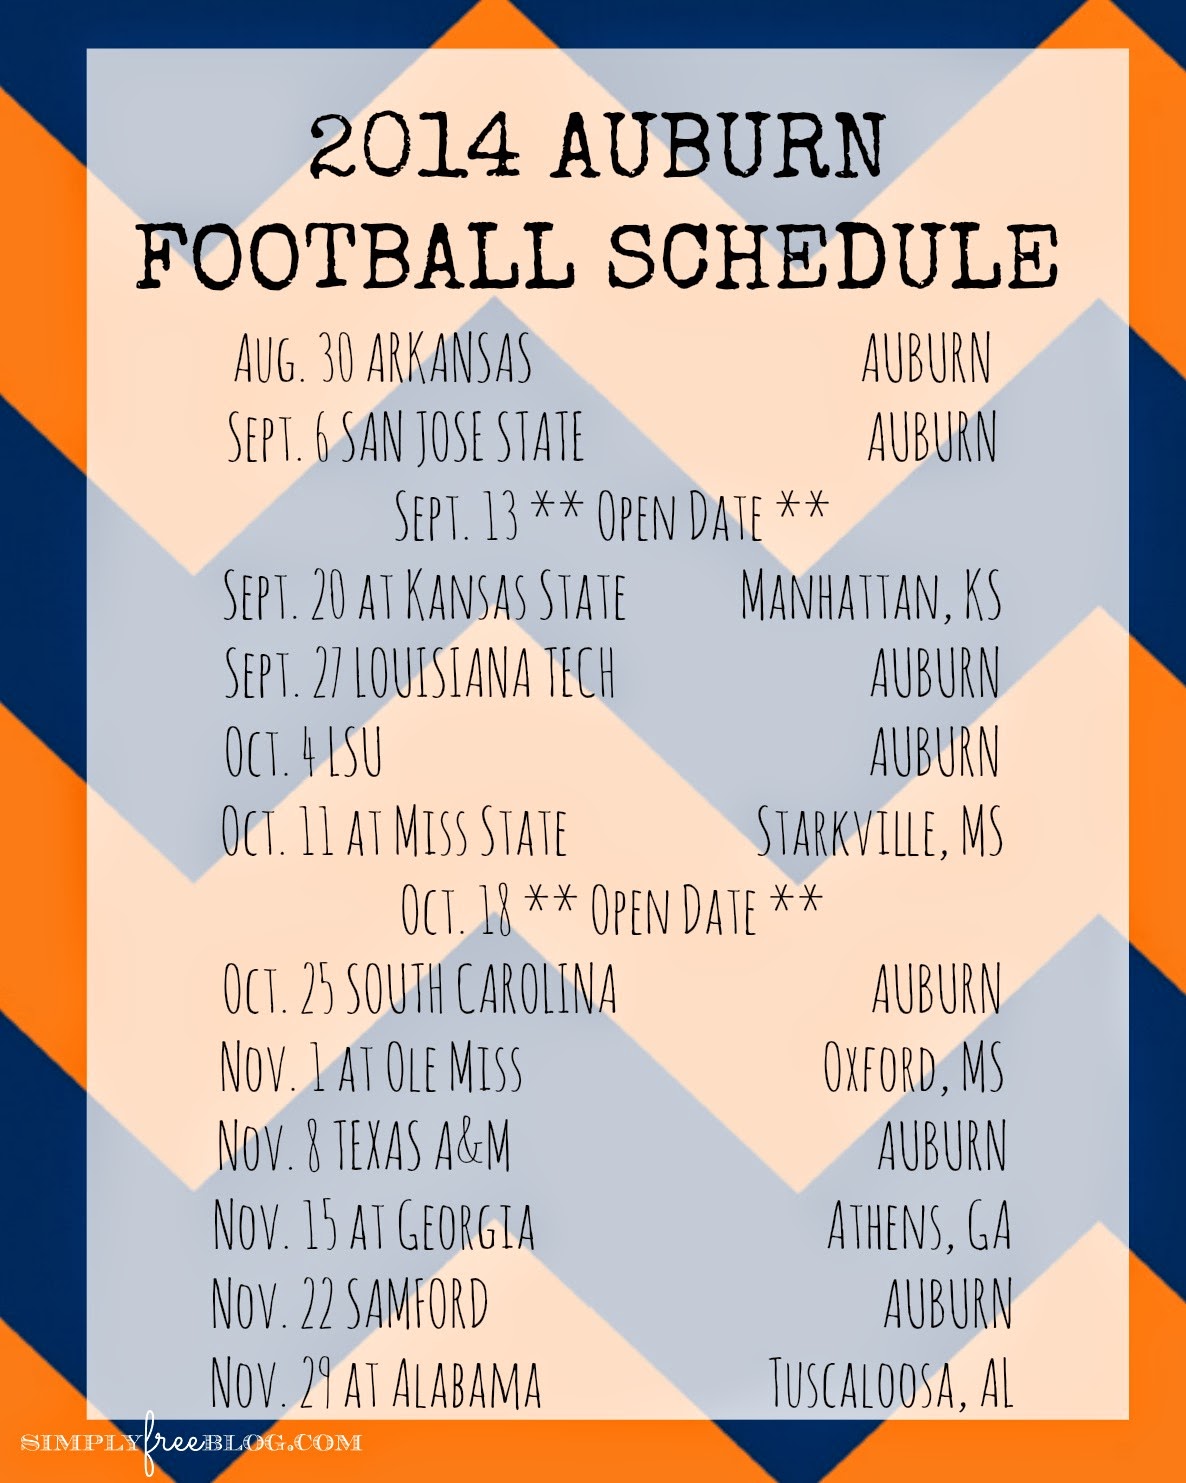 Alabama Football Schedule Wallpaper